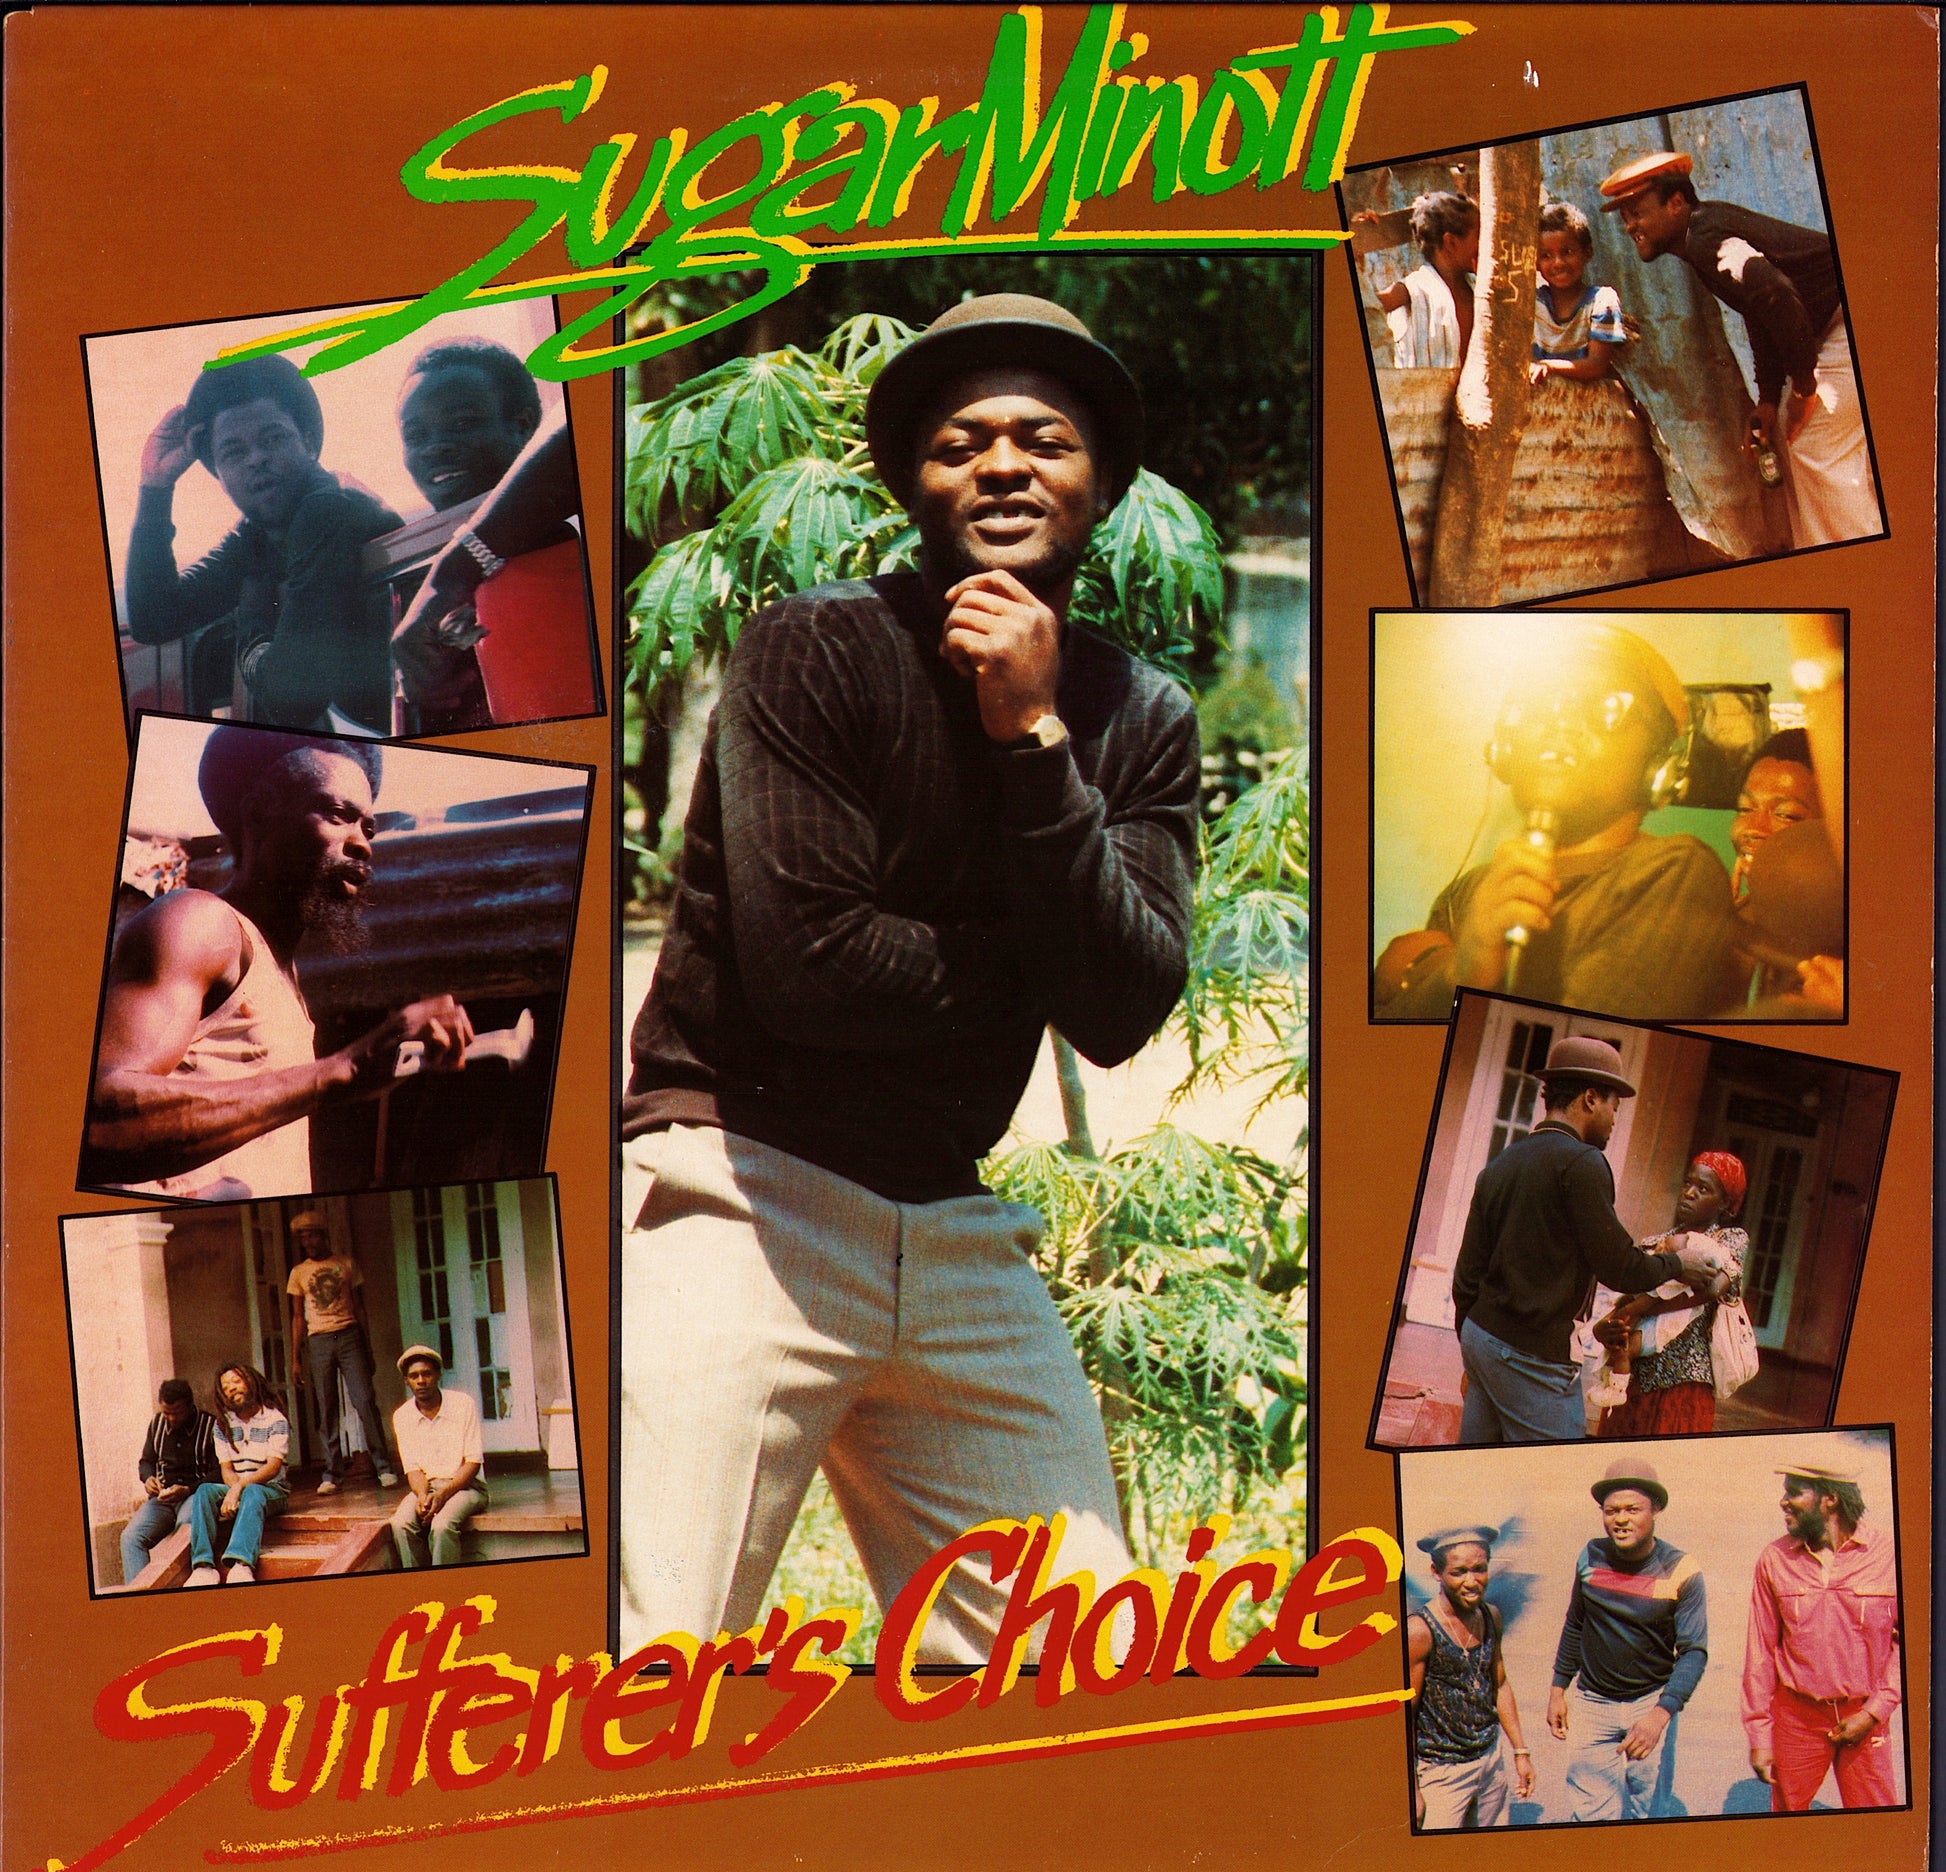 Sugar Minott – Sufferer's Choice (Vinyl LP)